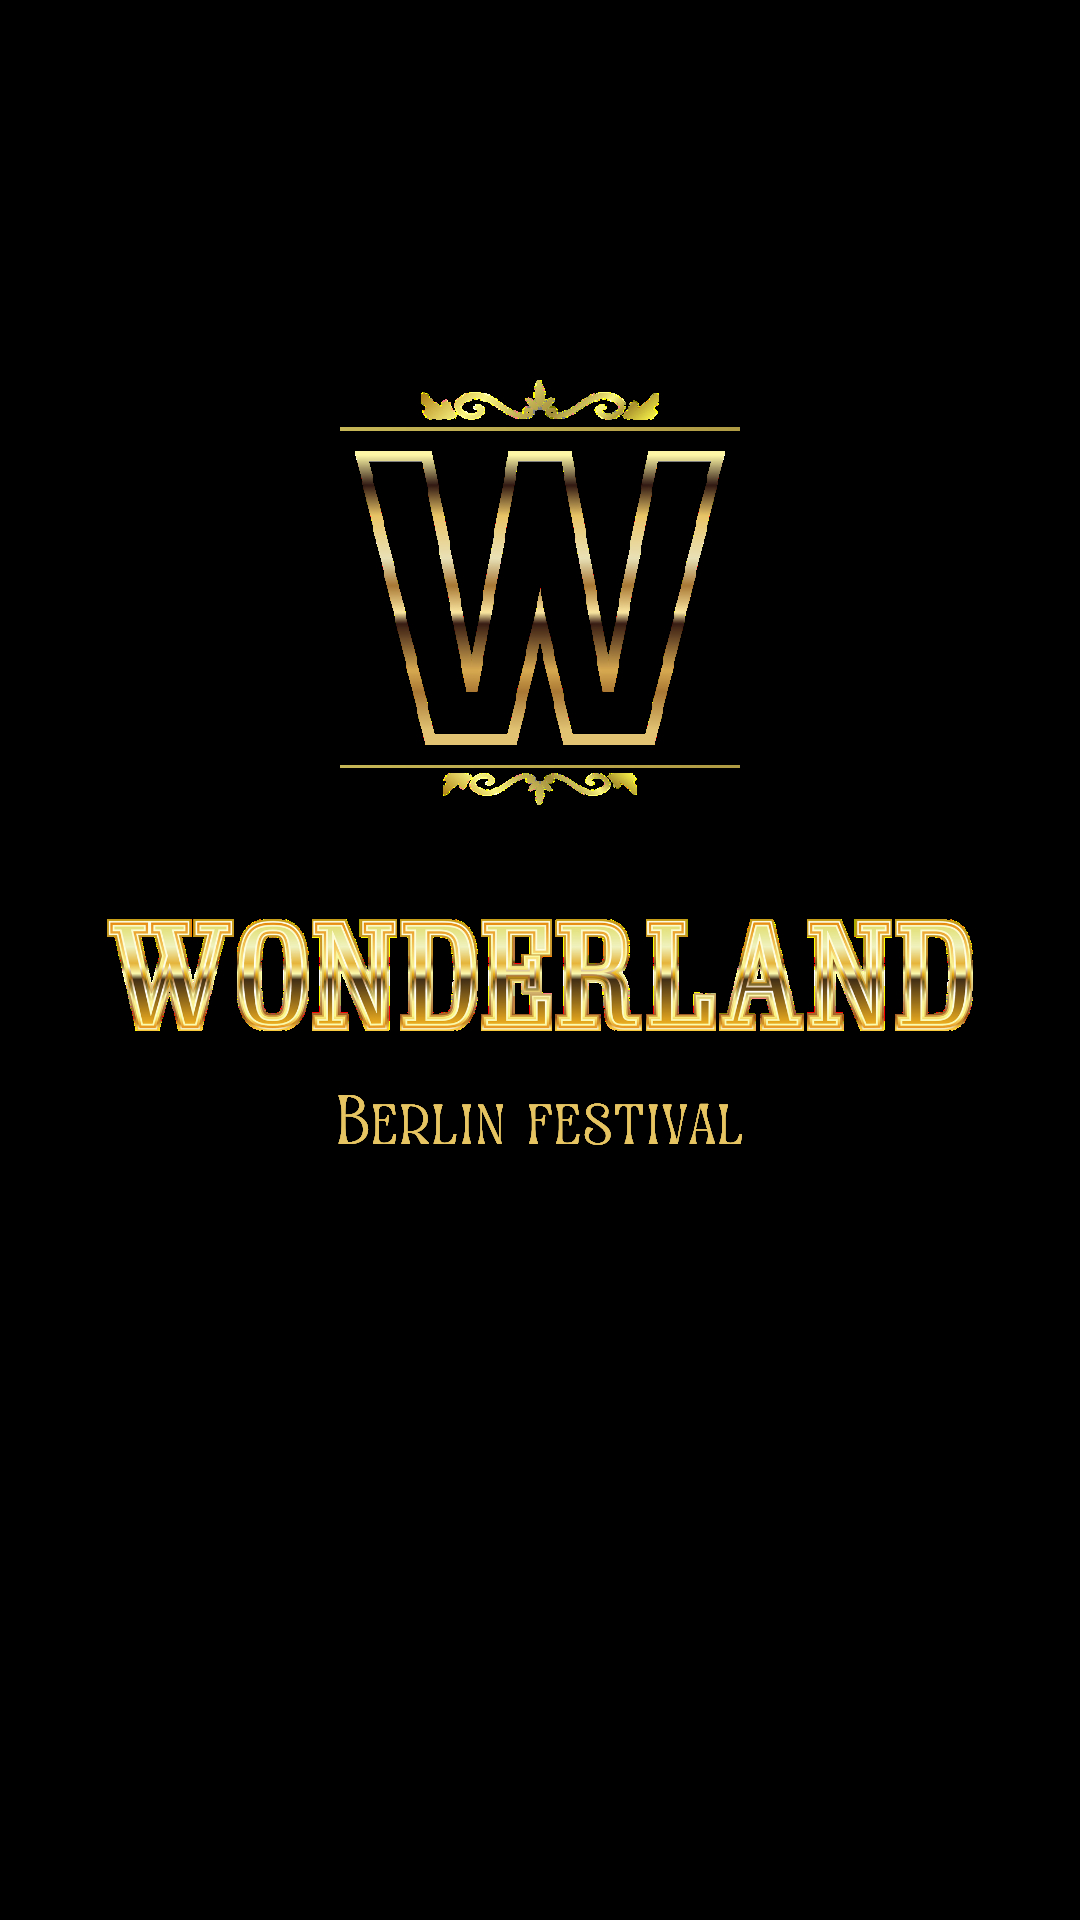 Wonderland festival